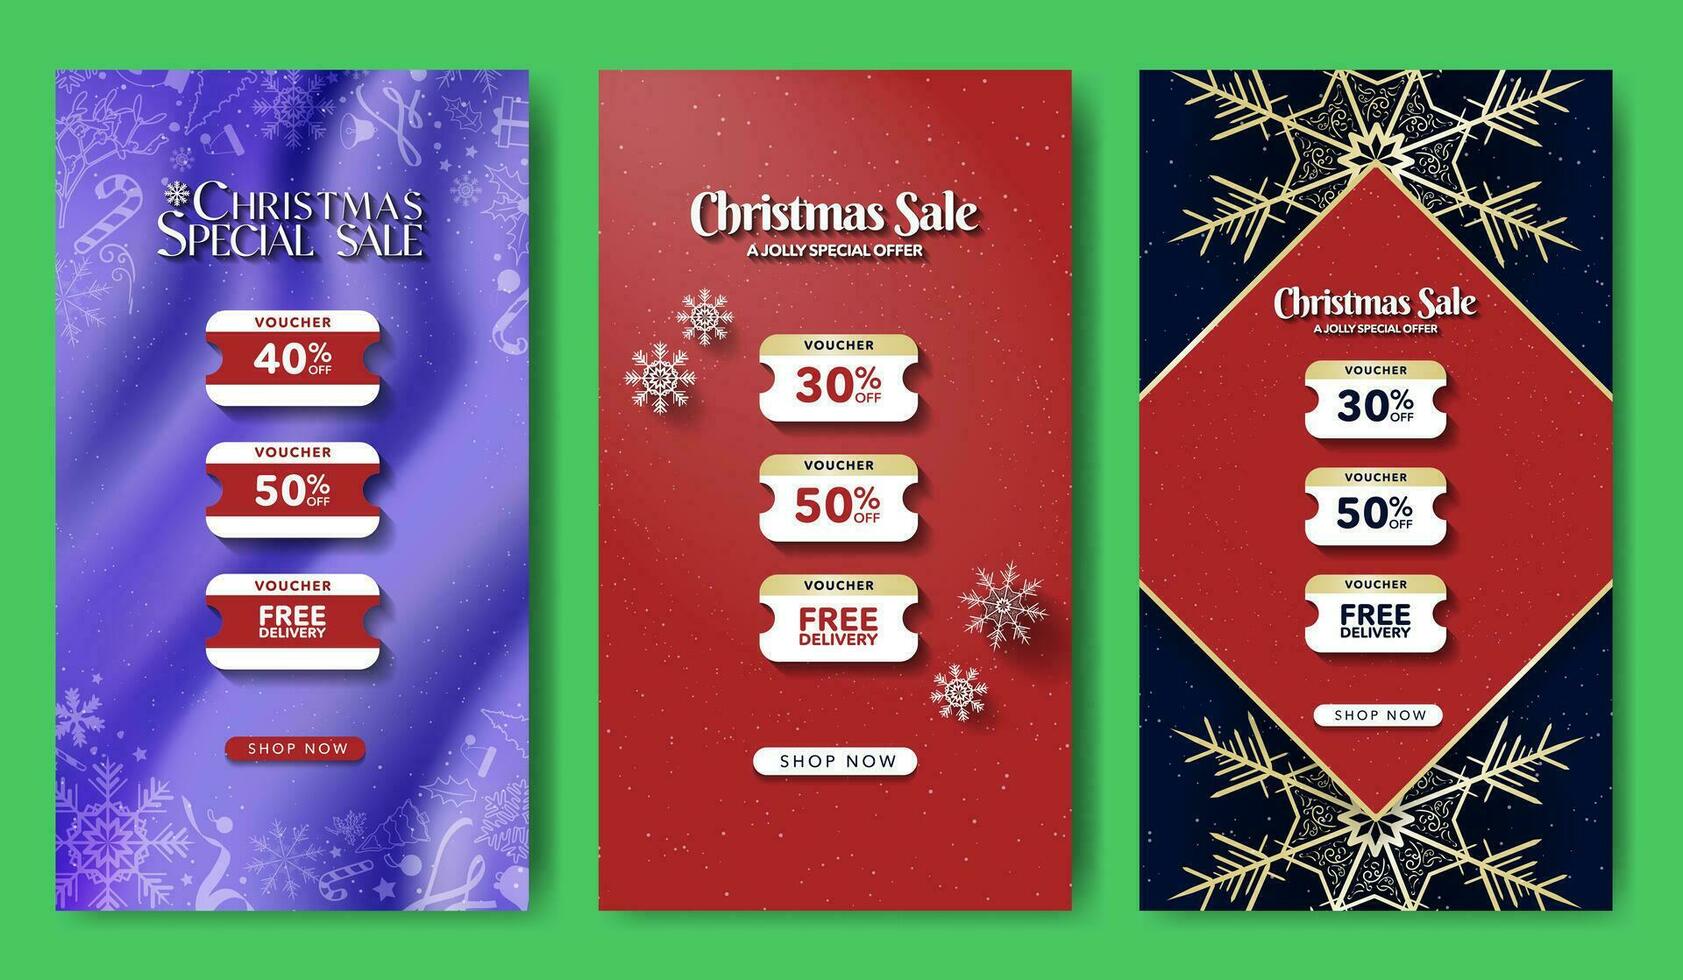 uppsättning av jul särskild försäljning voucher mallar för social media berättelser med tre kuponger och cta knapp. vektor illustrationer. eps 10.